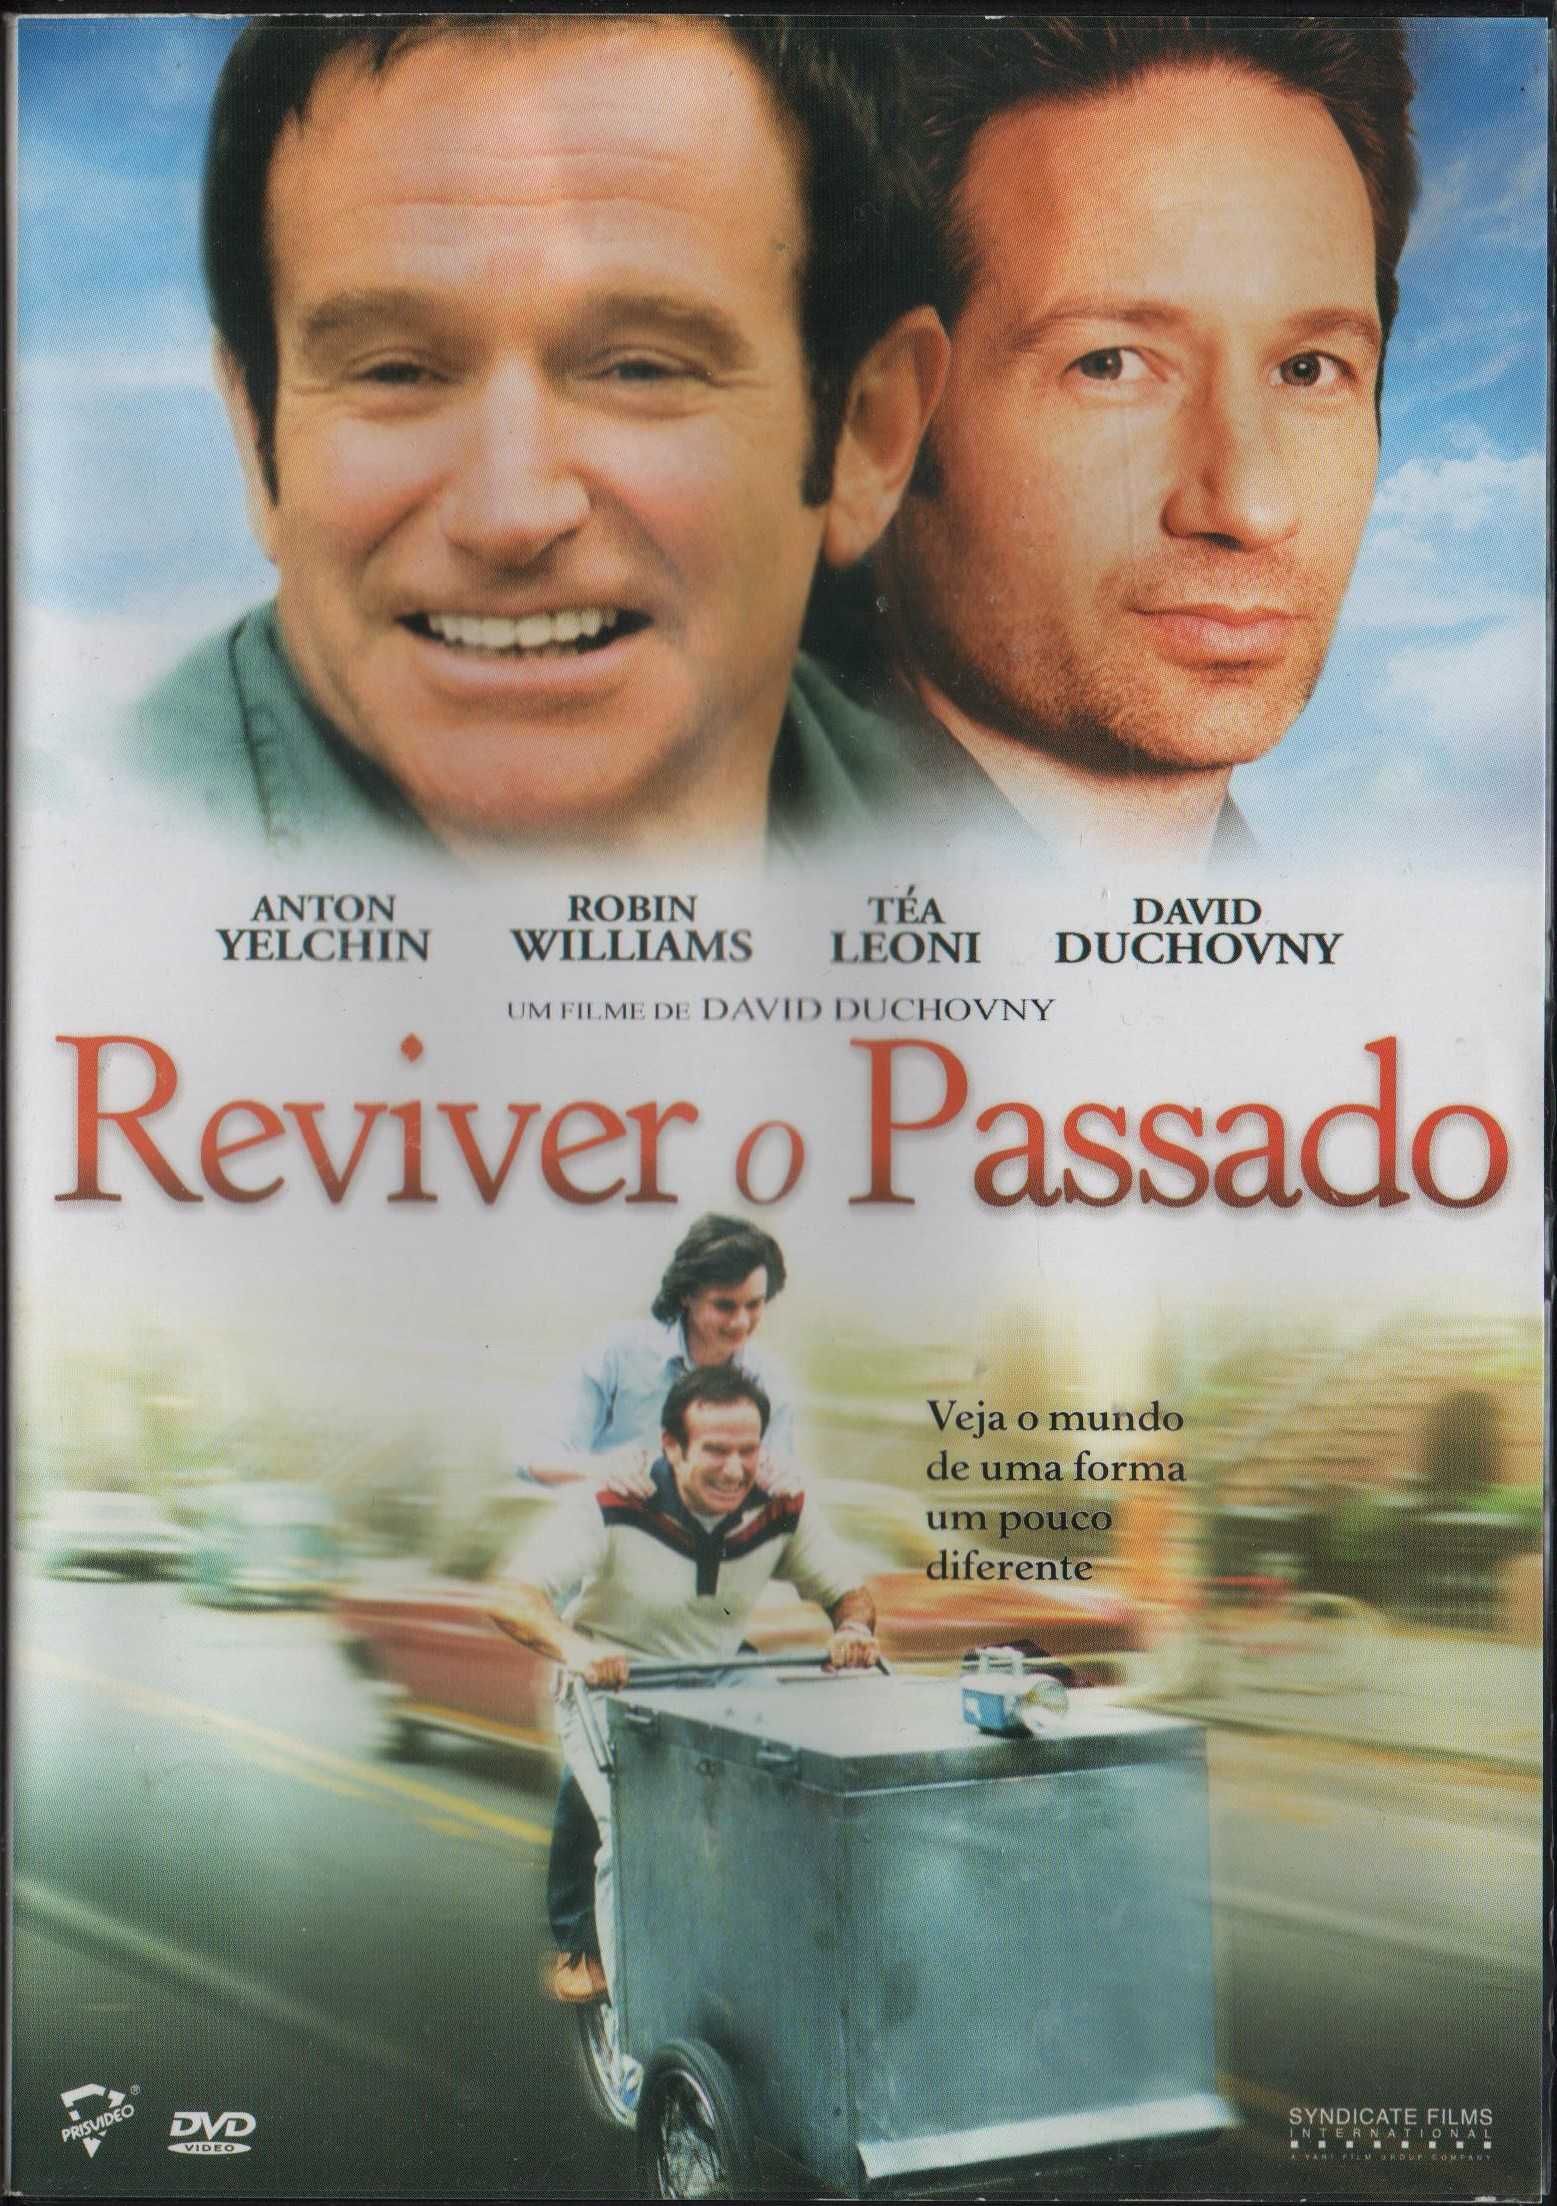 Dvd Reviver O Passado - comédia - Robin Williams/ David Duchovny